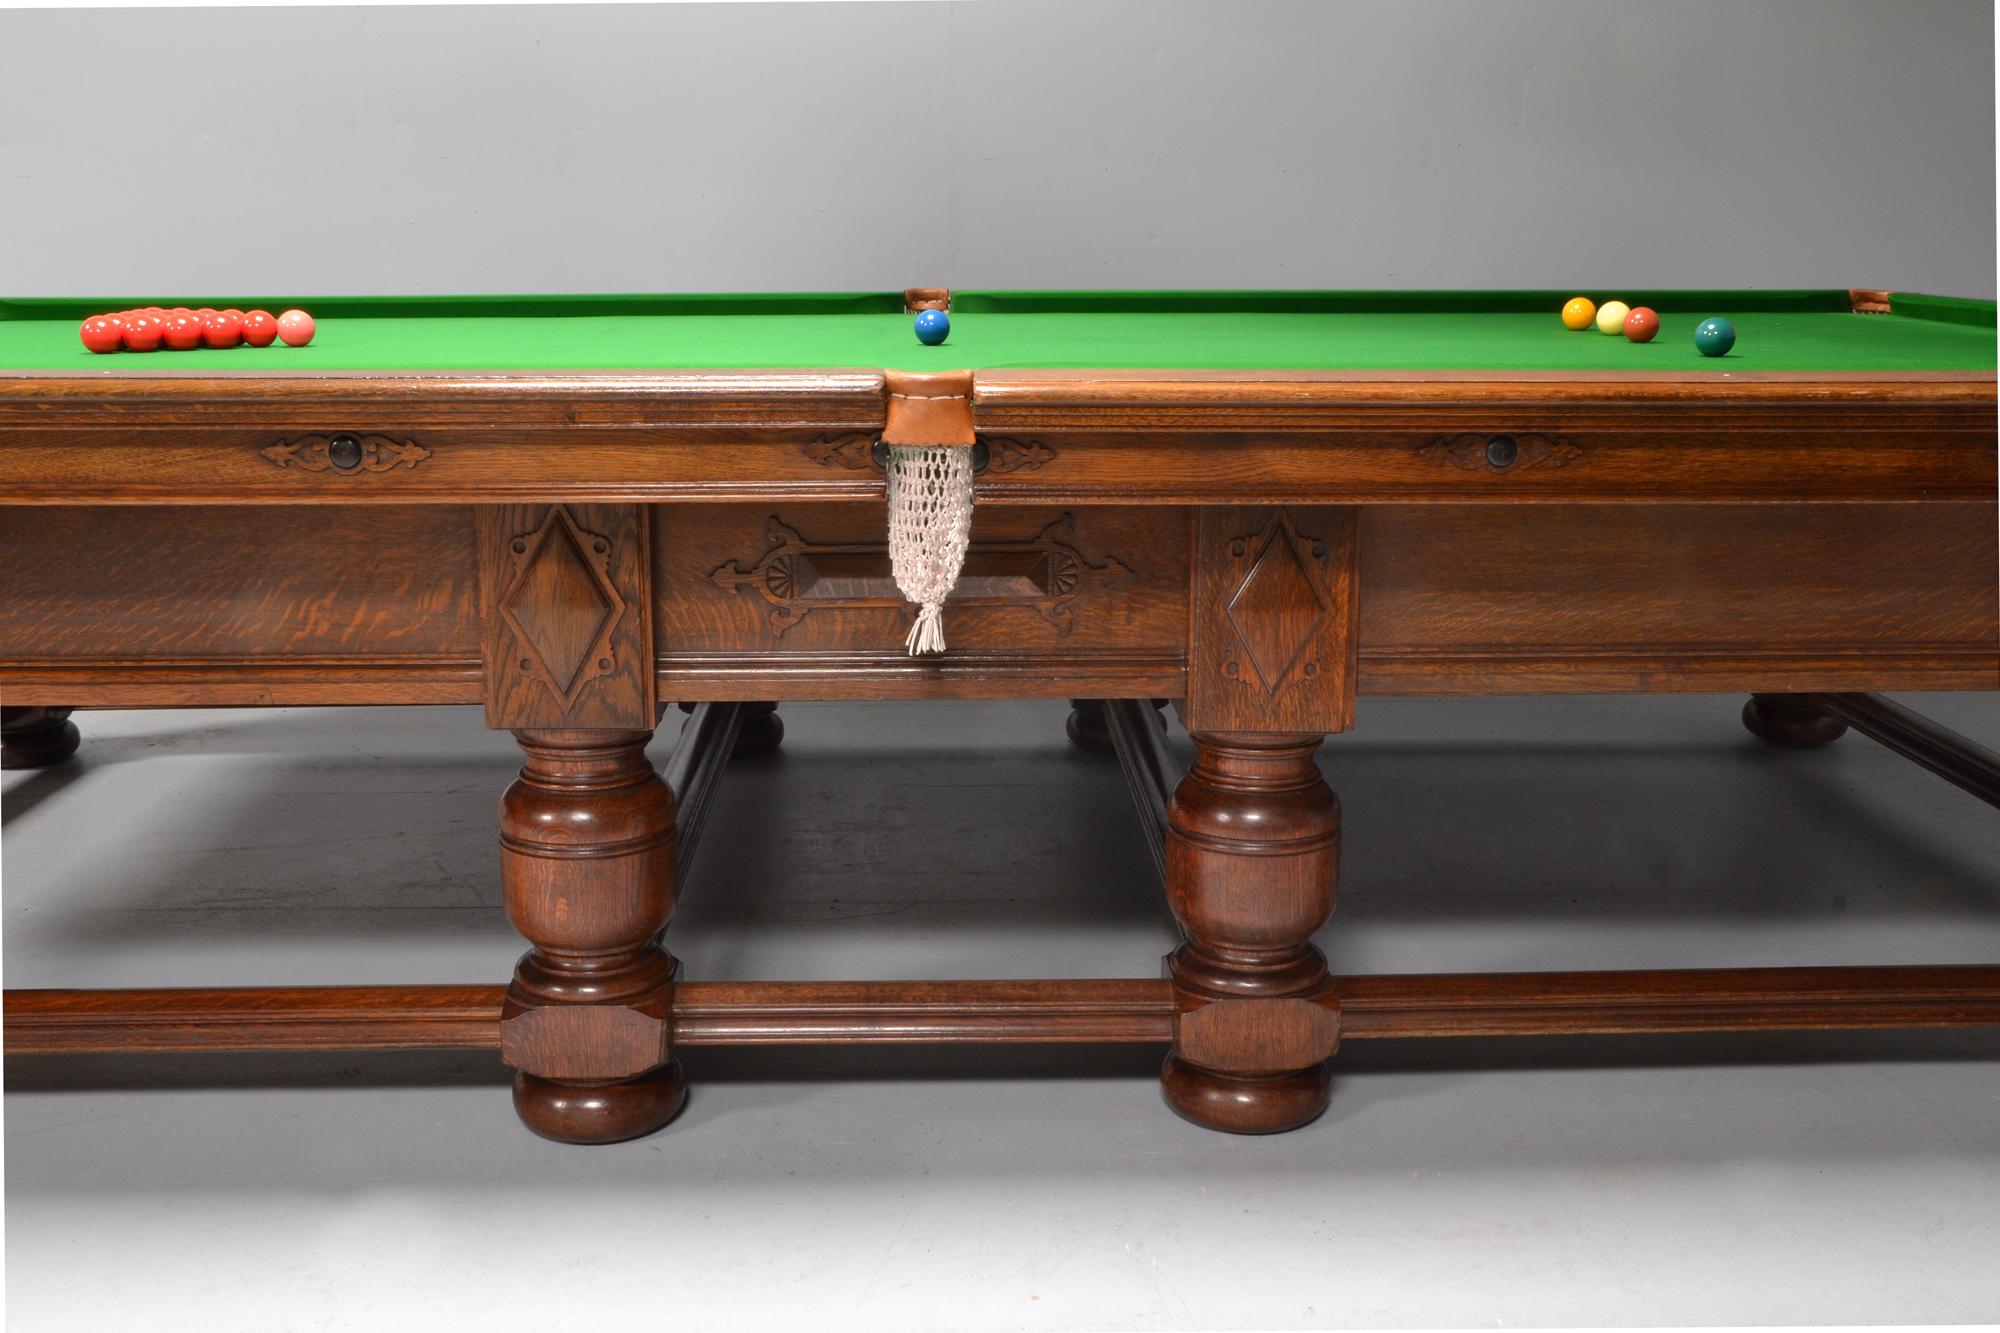 Ein seltener massiver Eichenbillard- oder Snookertisch in Form eines Refektoriums oder eines jakobinischen Tisches von den 